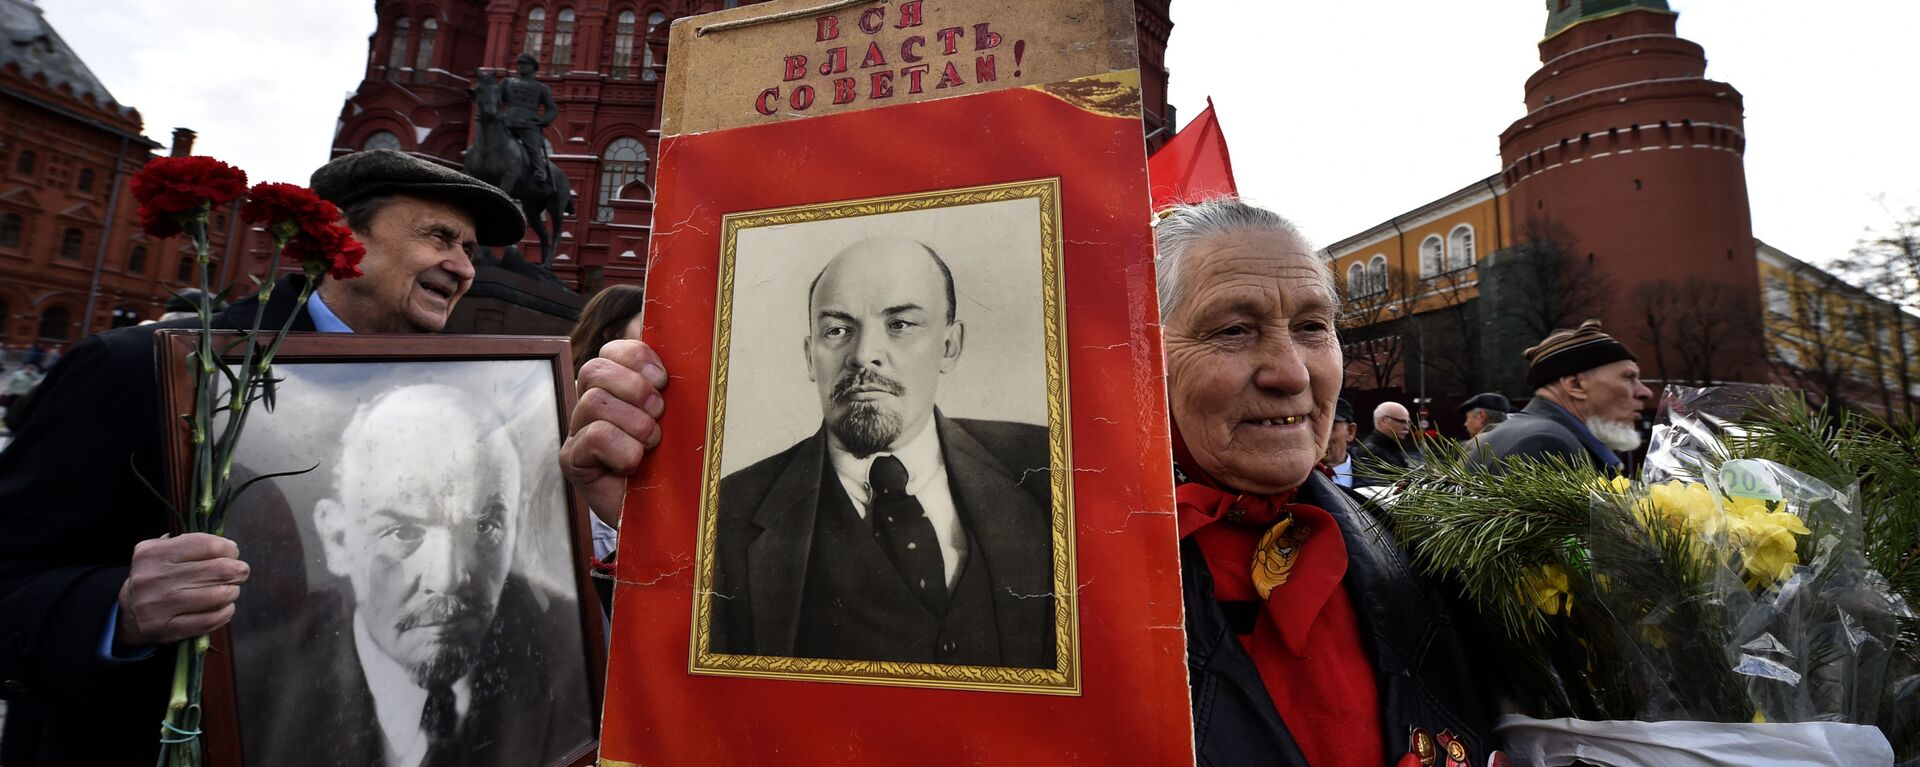 Những người cộng sản kỷ niệm ngày sinh Lenin trên Quảng trường Đỏ - Sputnik Việt Nam, 1920, 01.08.2017